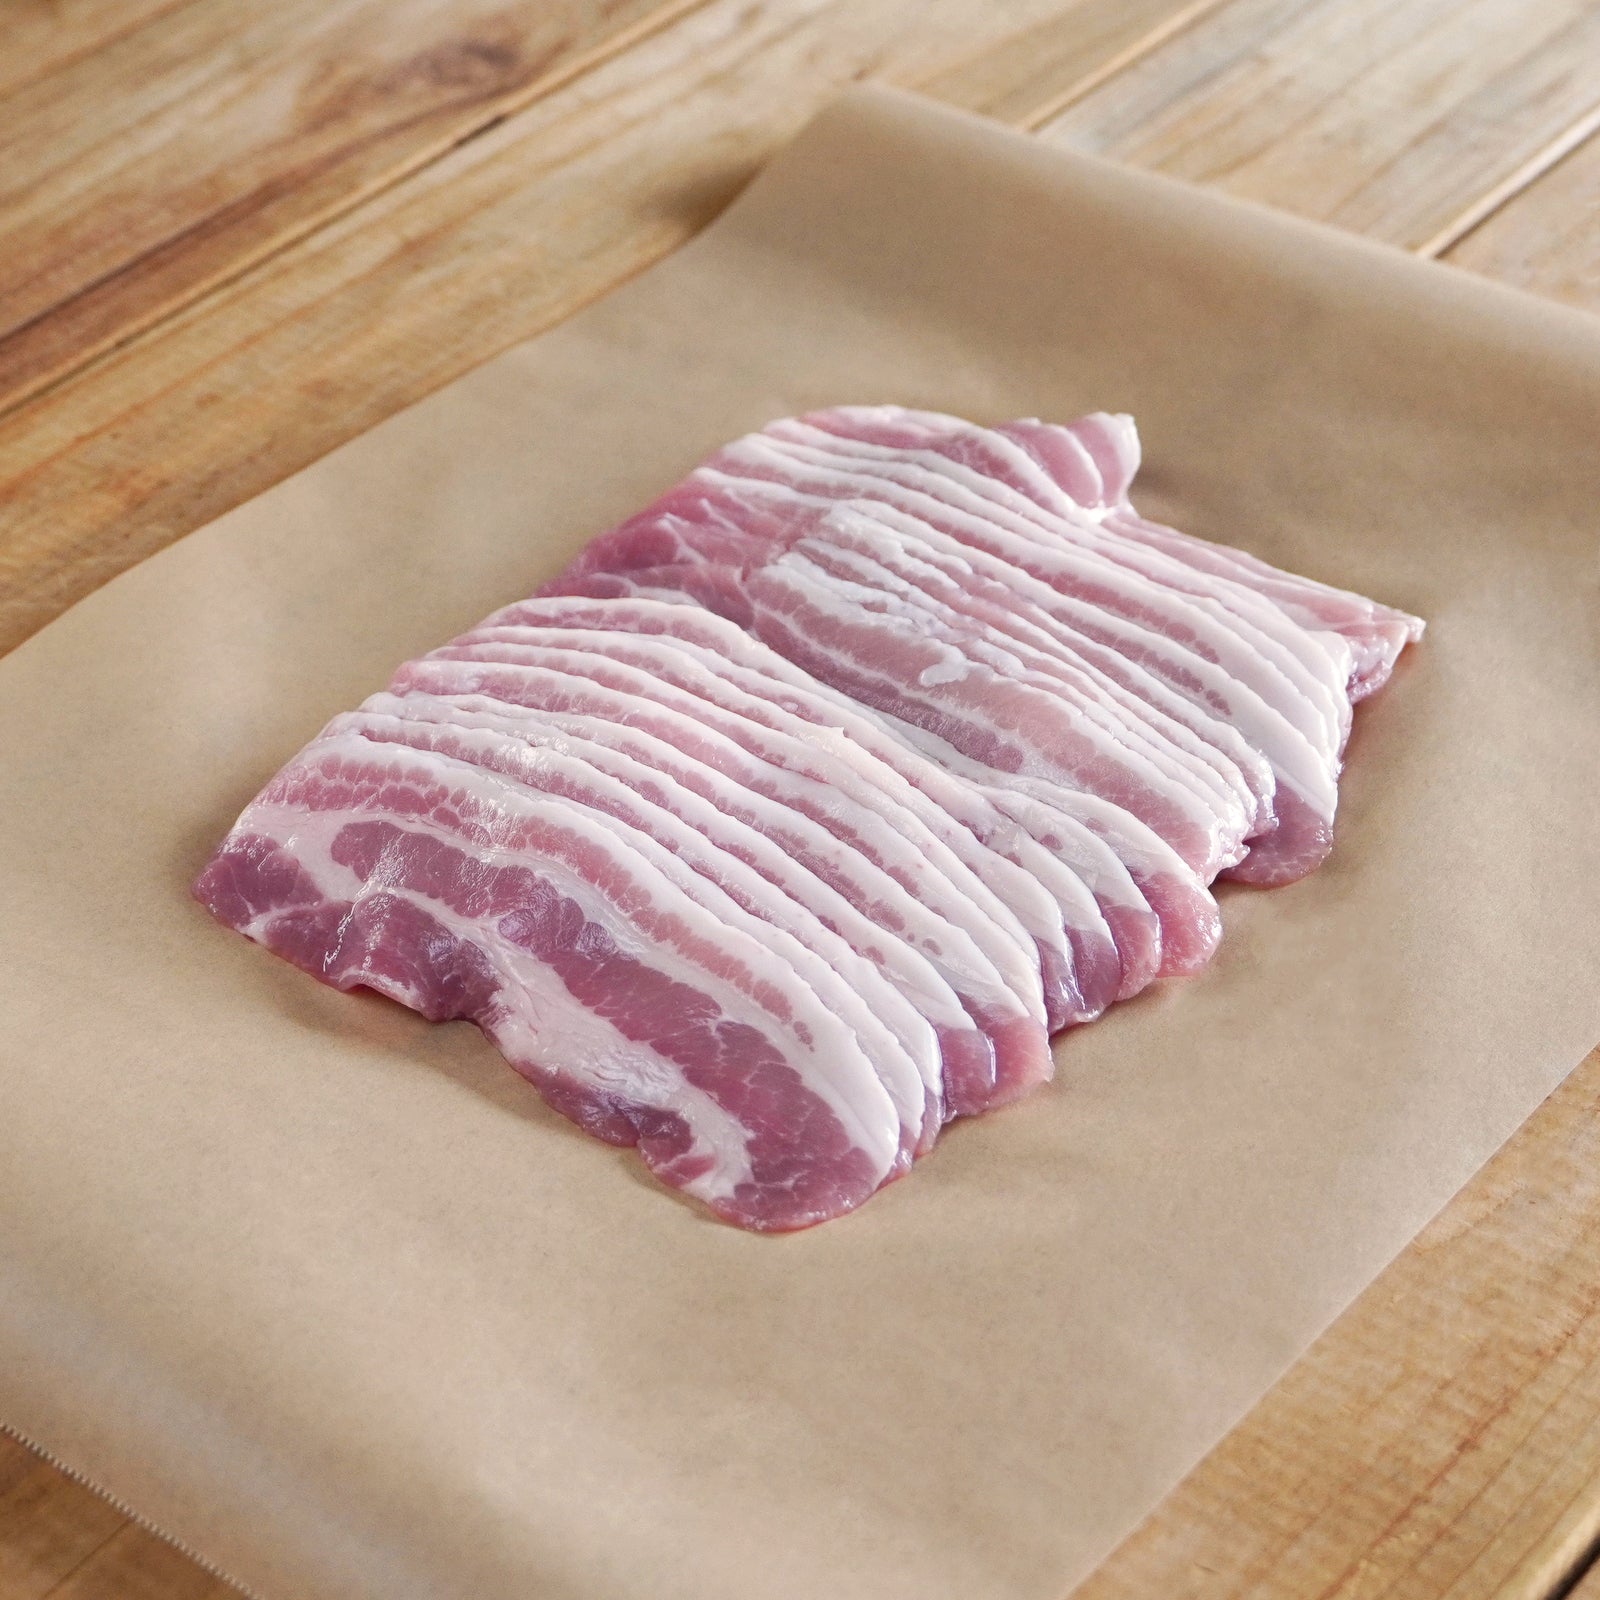 Free-Range Pork Belly Slices from Australia (300g) - Horizon Farms